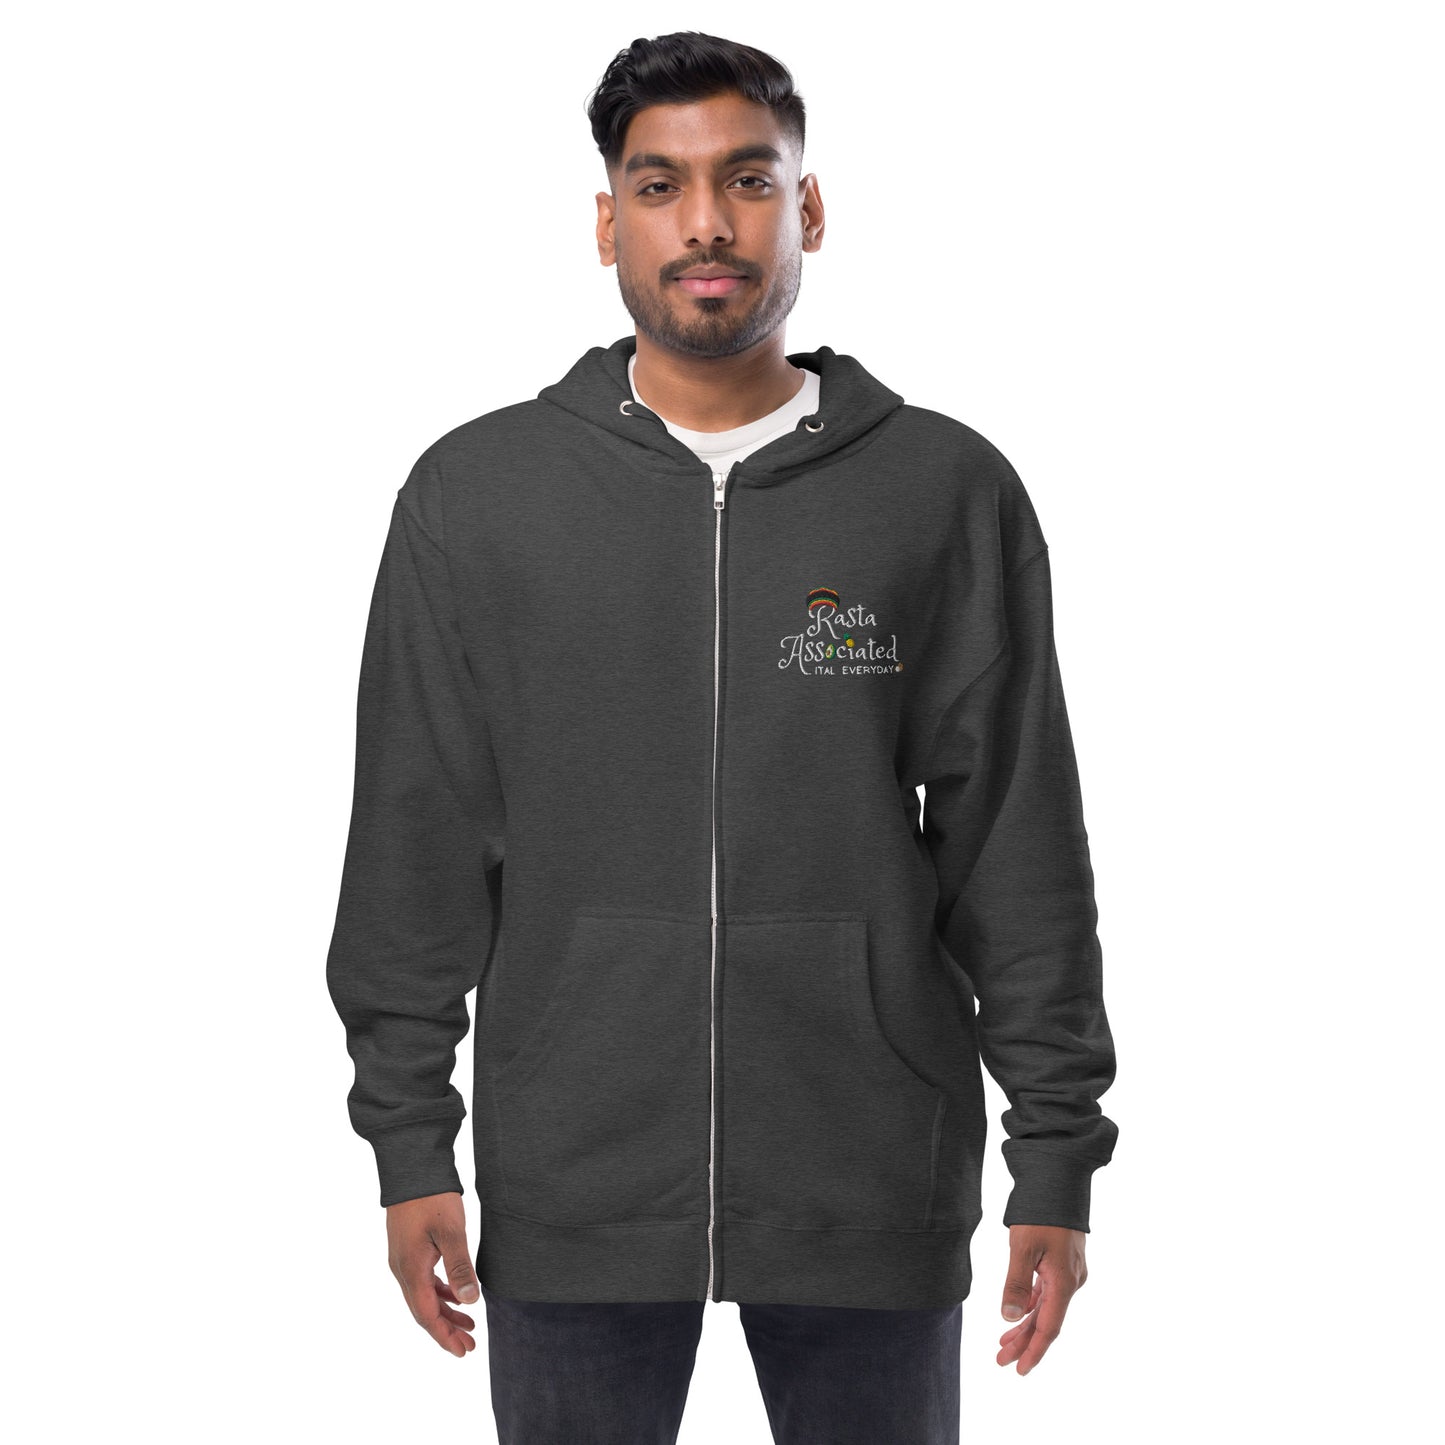 Rasta - Unisex fleece zip up hoodie